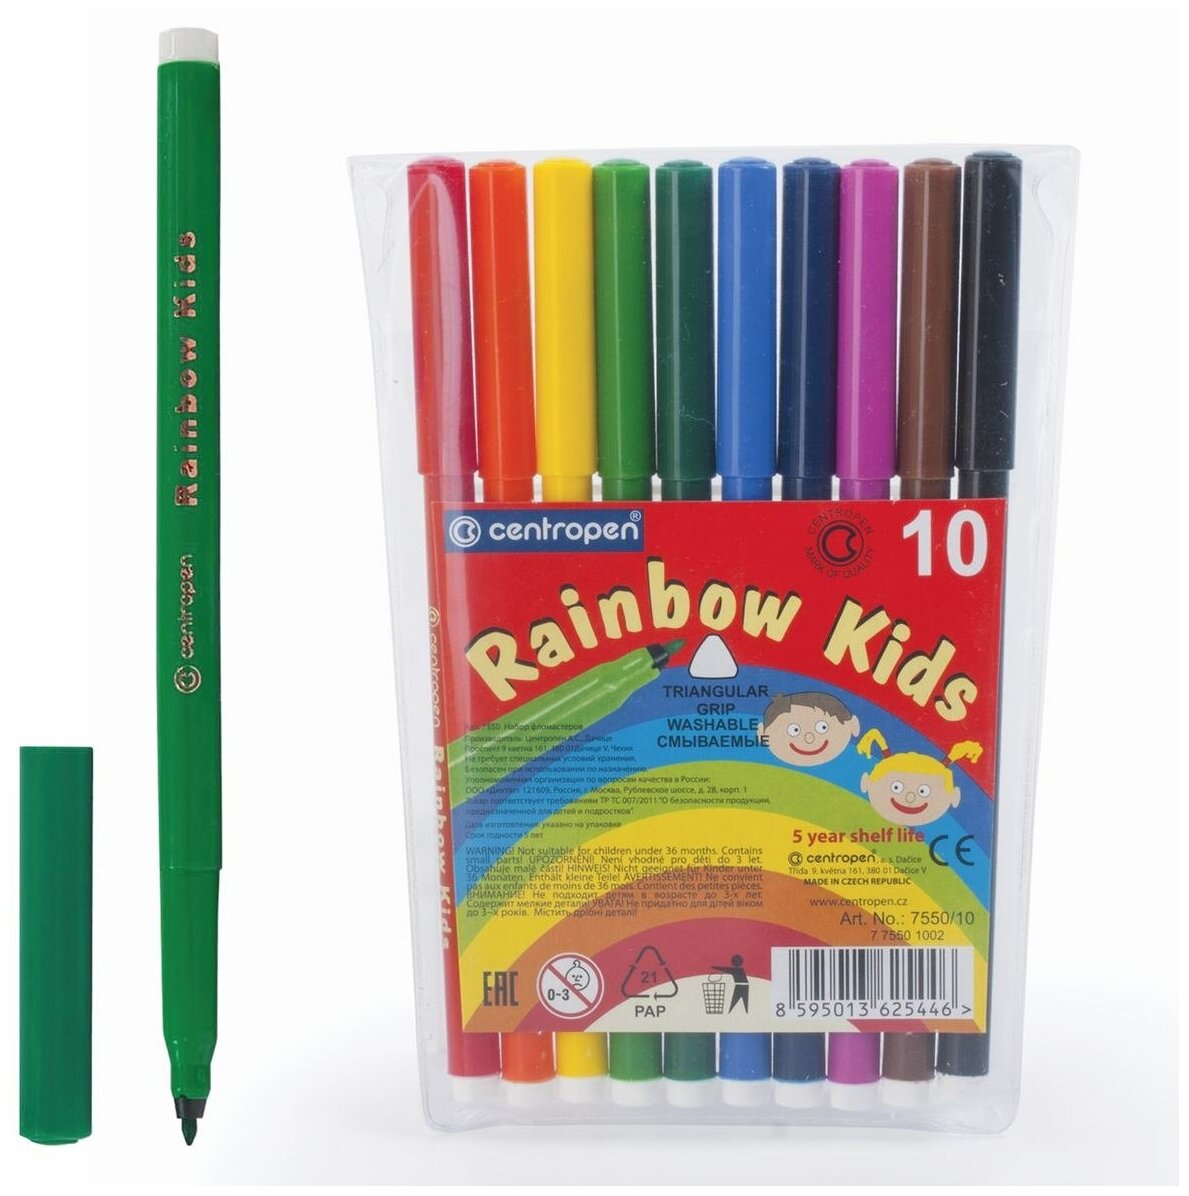 Фломастеры Centropen "Rainbow Kids", 10 цветов, смываемые, эргономичные, вентилируемый колпачок (7550/10)